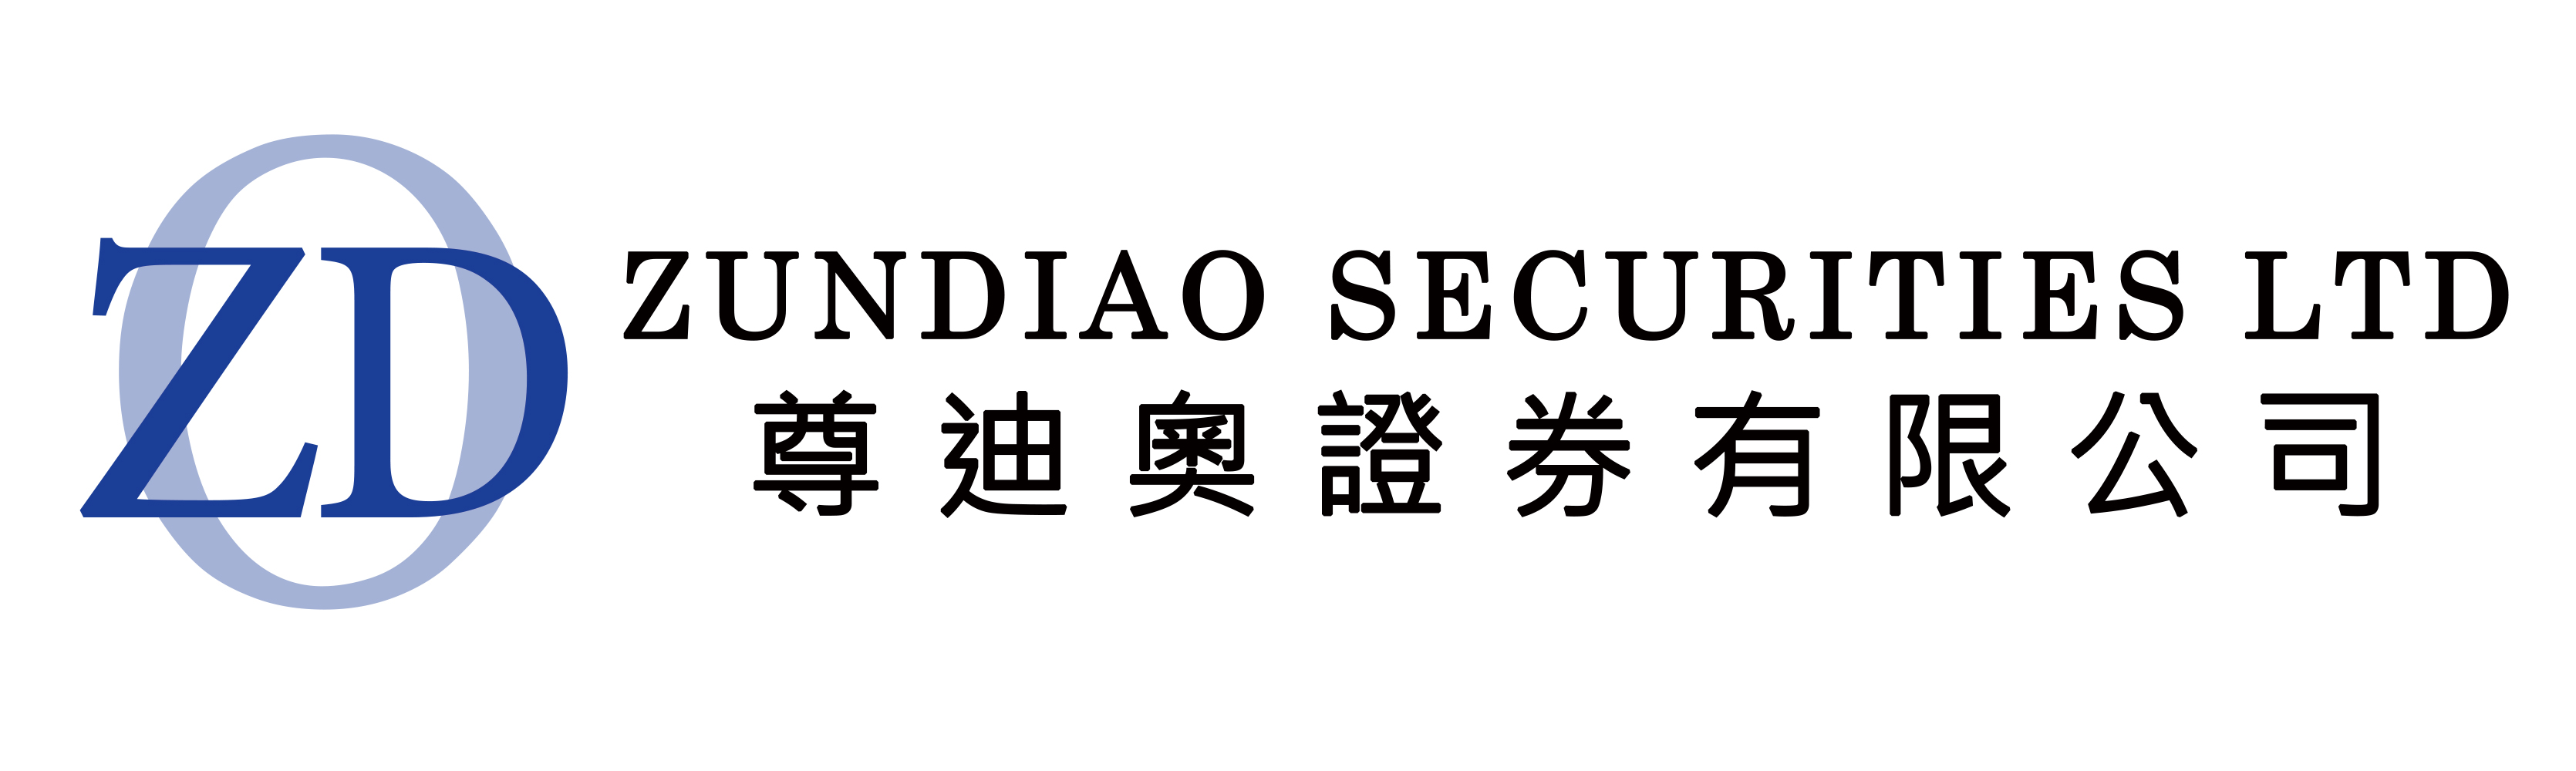 Zundiao Securities Ltd